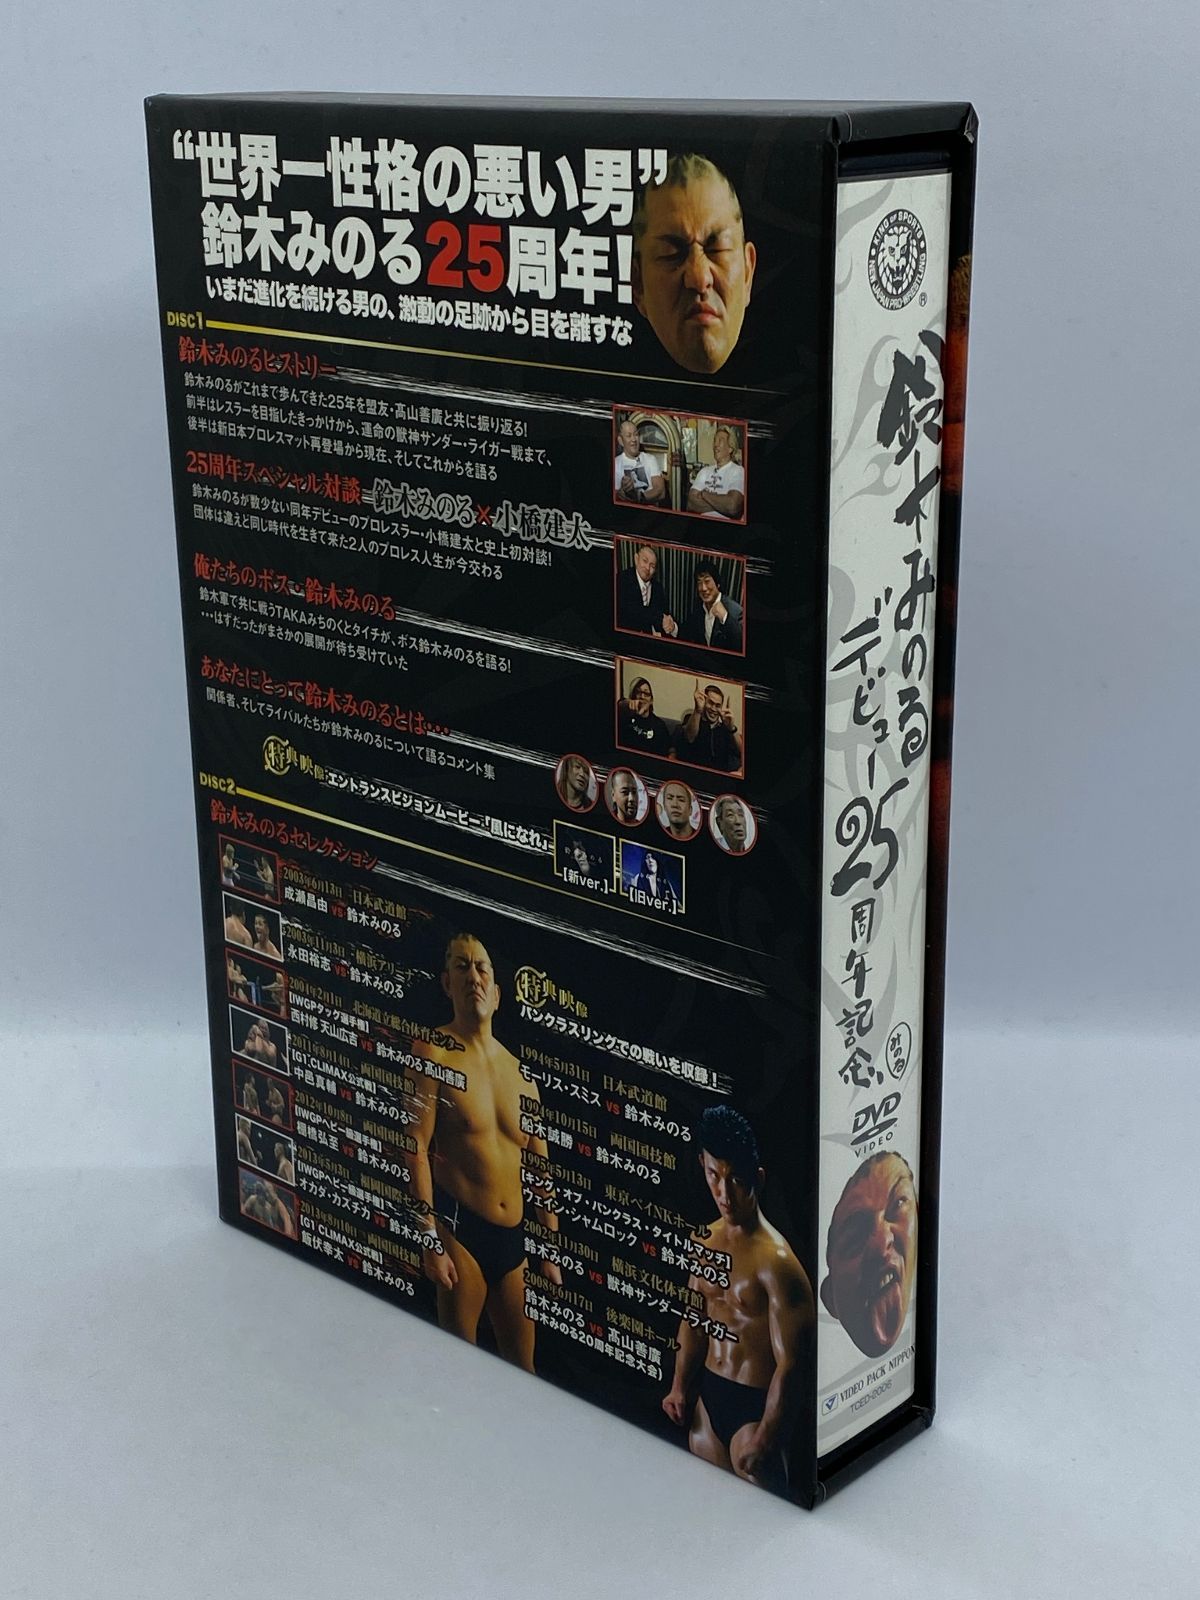 鈴木みのるデビュー25周年記念DVD